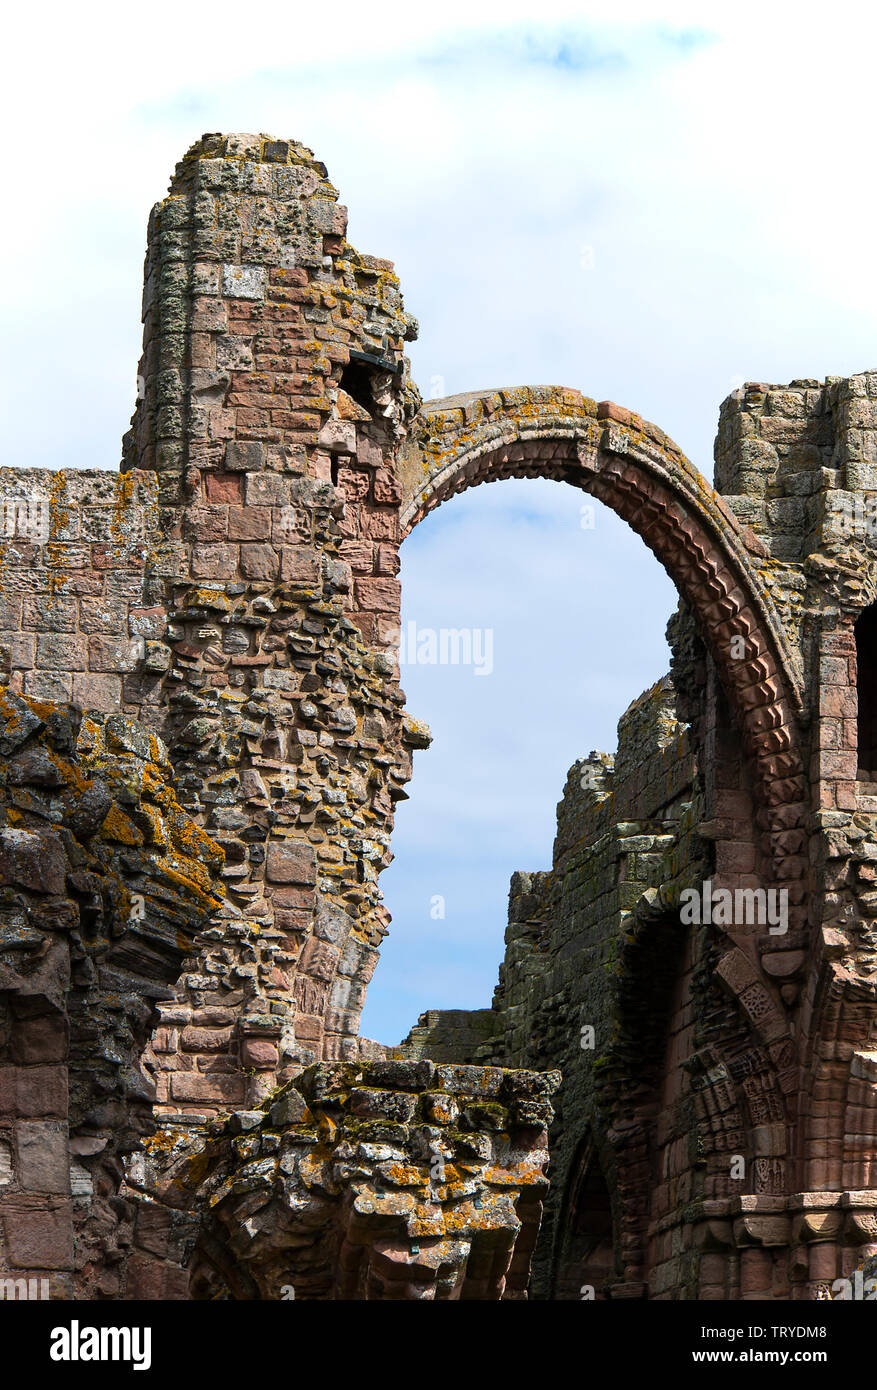 Teil des zerstörten angelsächsischen Lidisfarne Priory auf Holy Island Northumberland England Vereinigtes Königreich Großbritannien Stockfoto